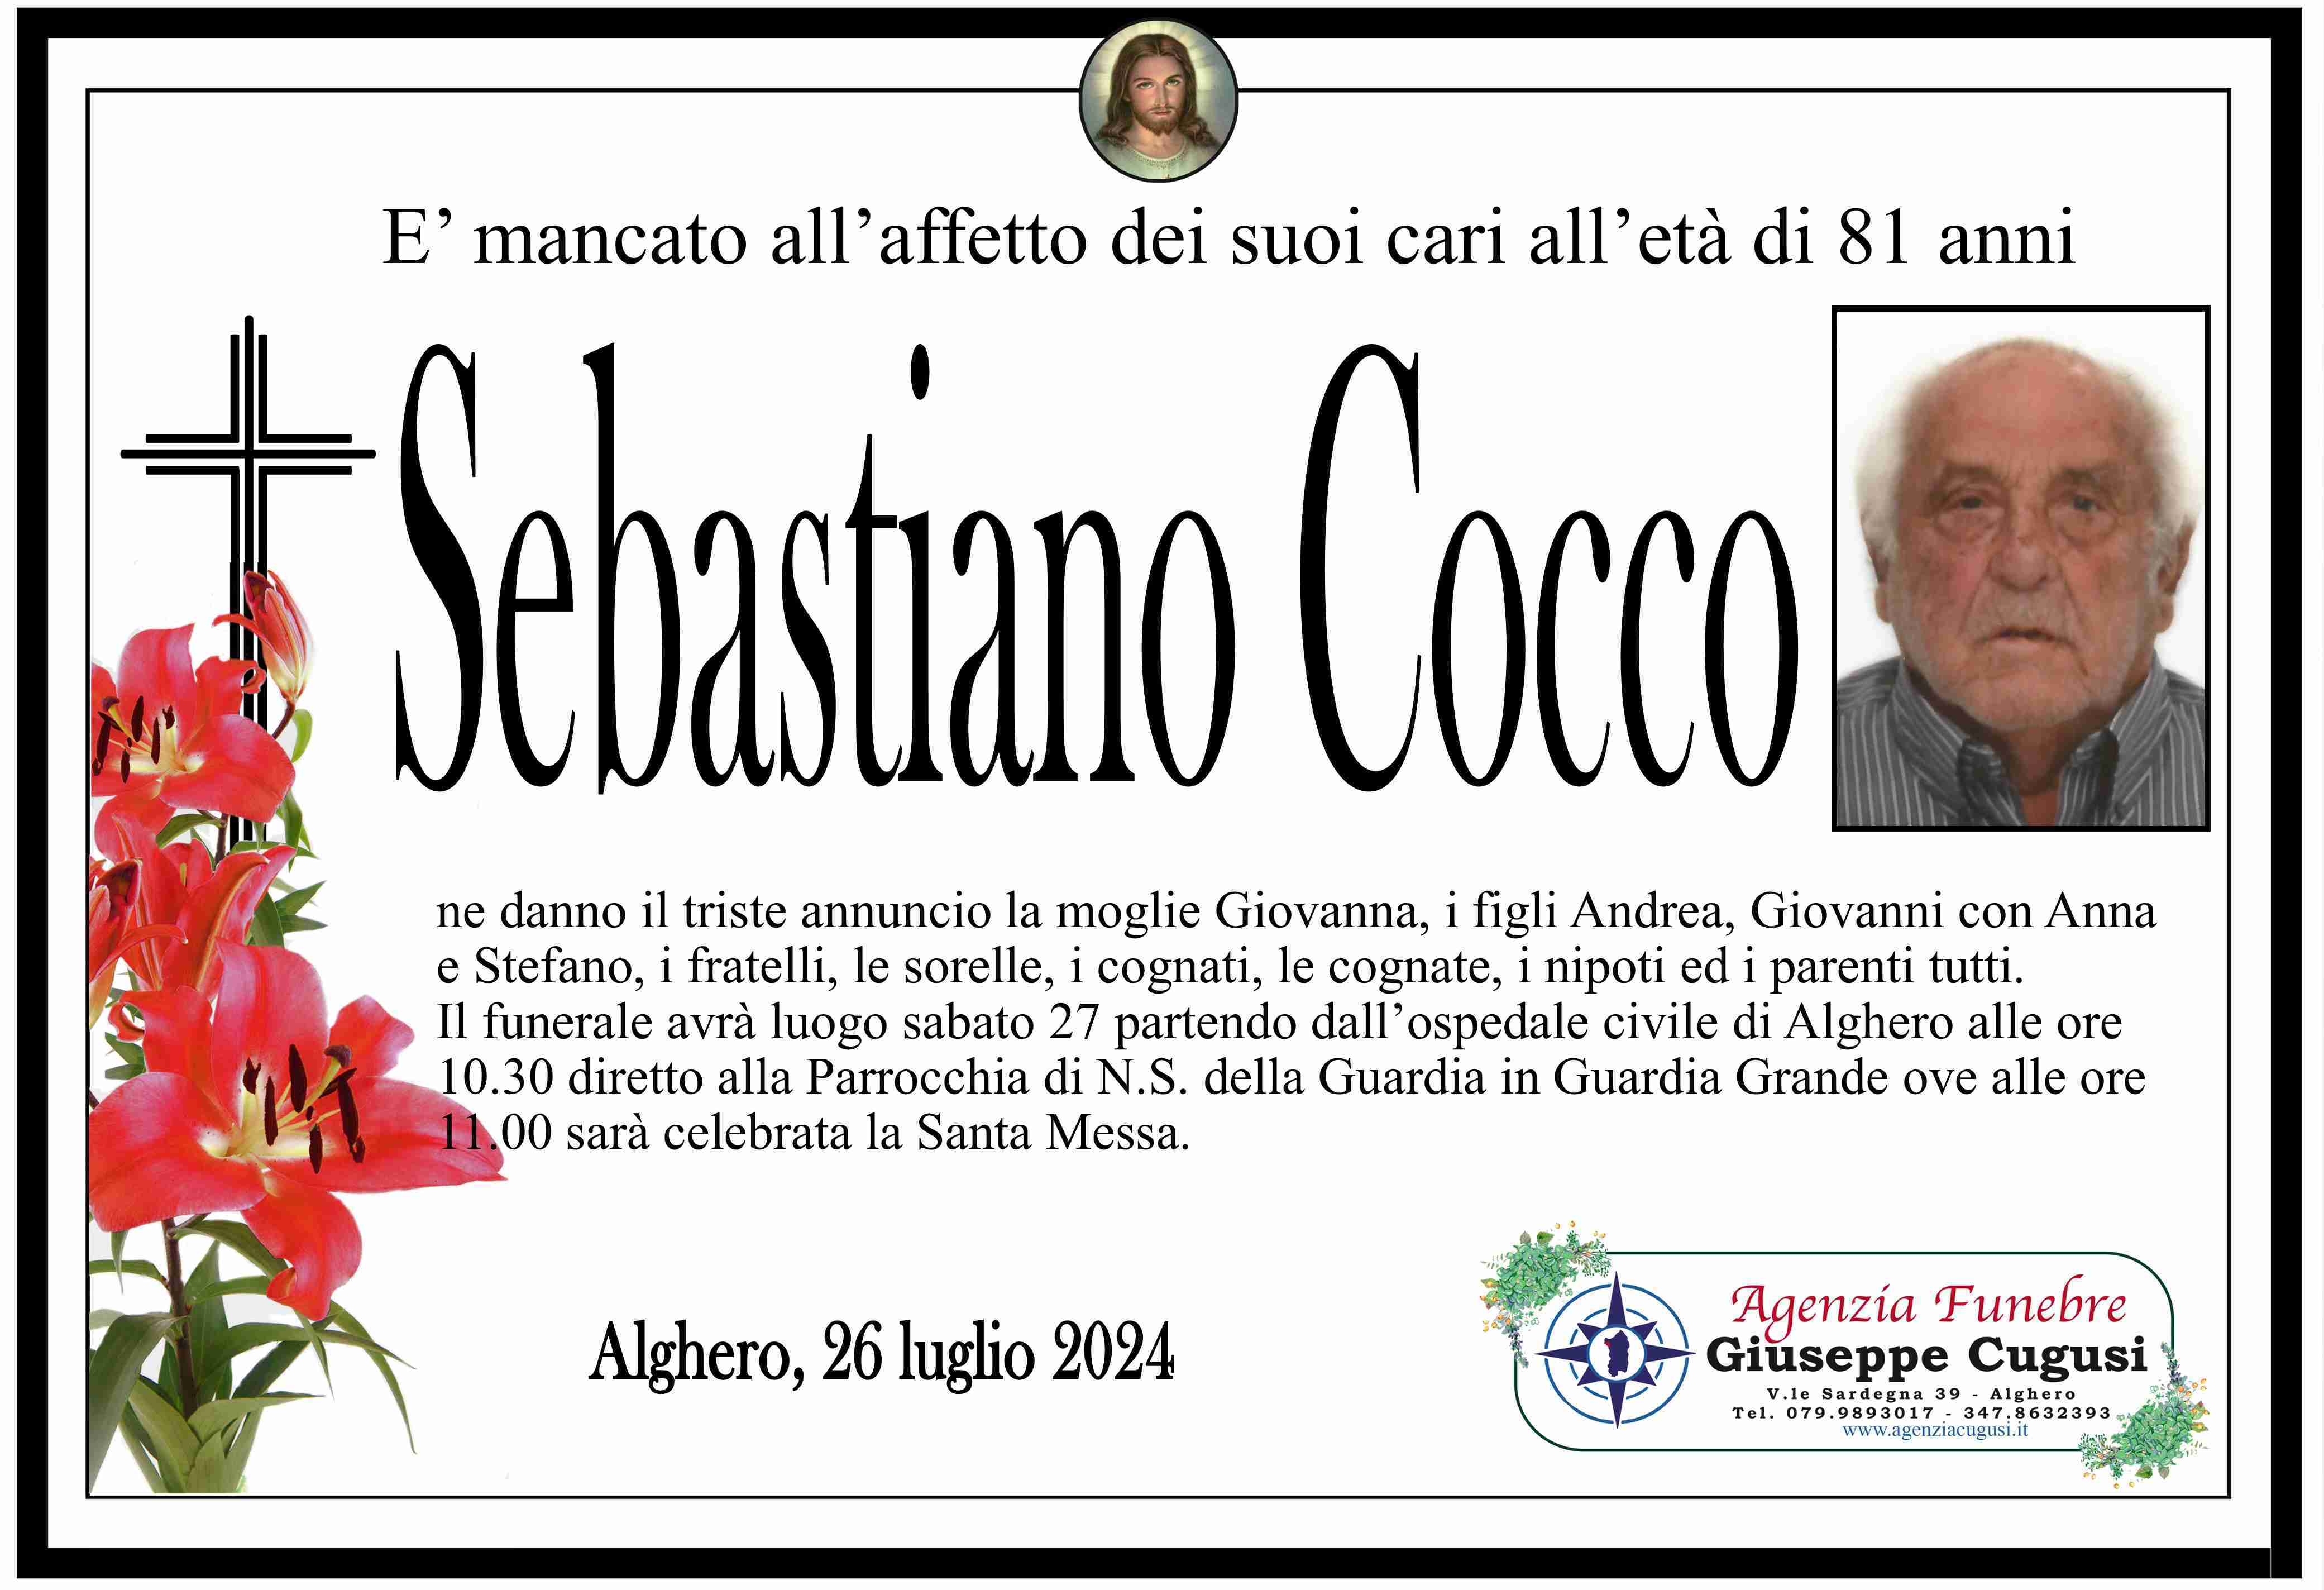 Sebastiano Cocco